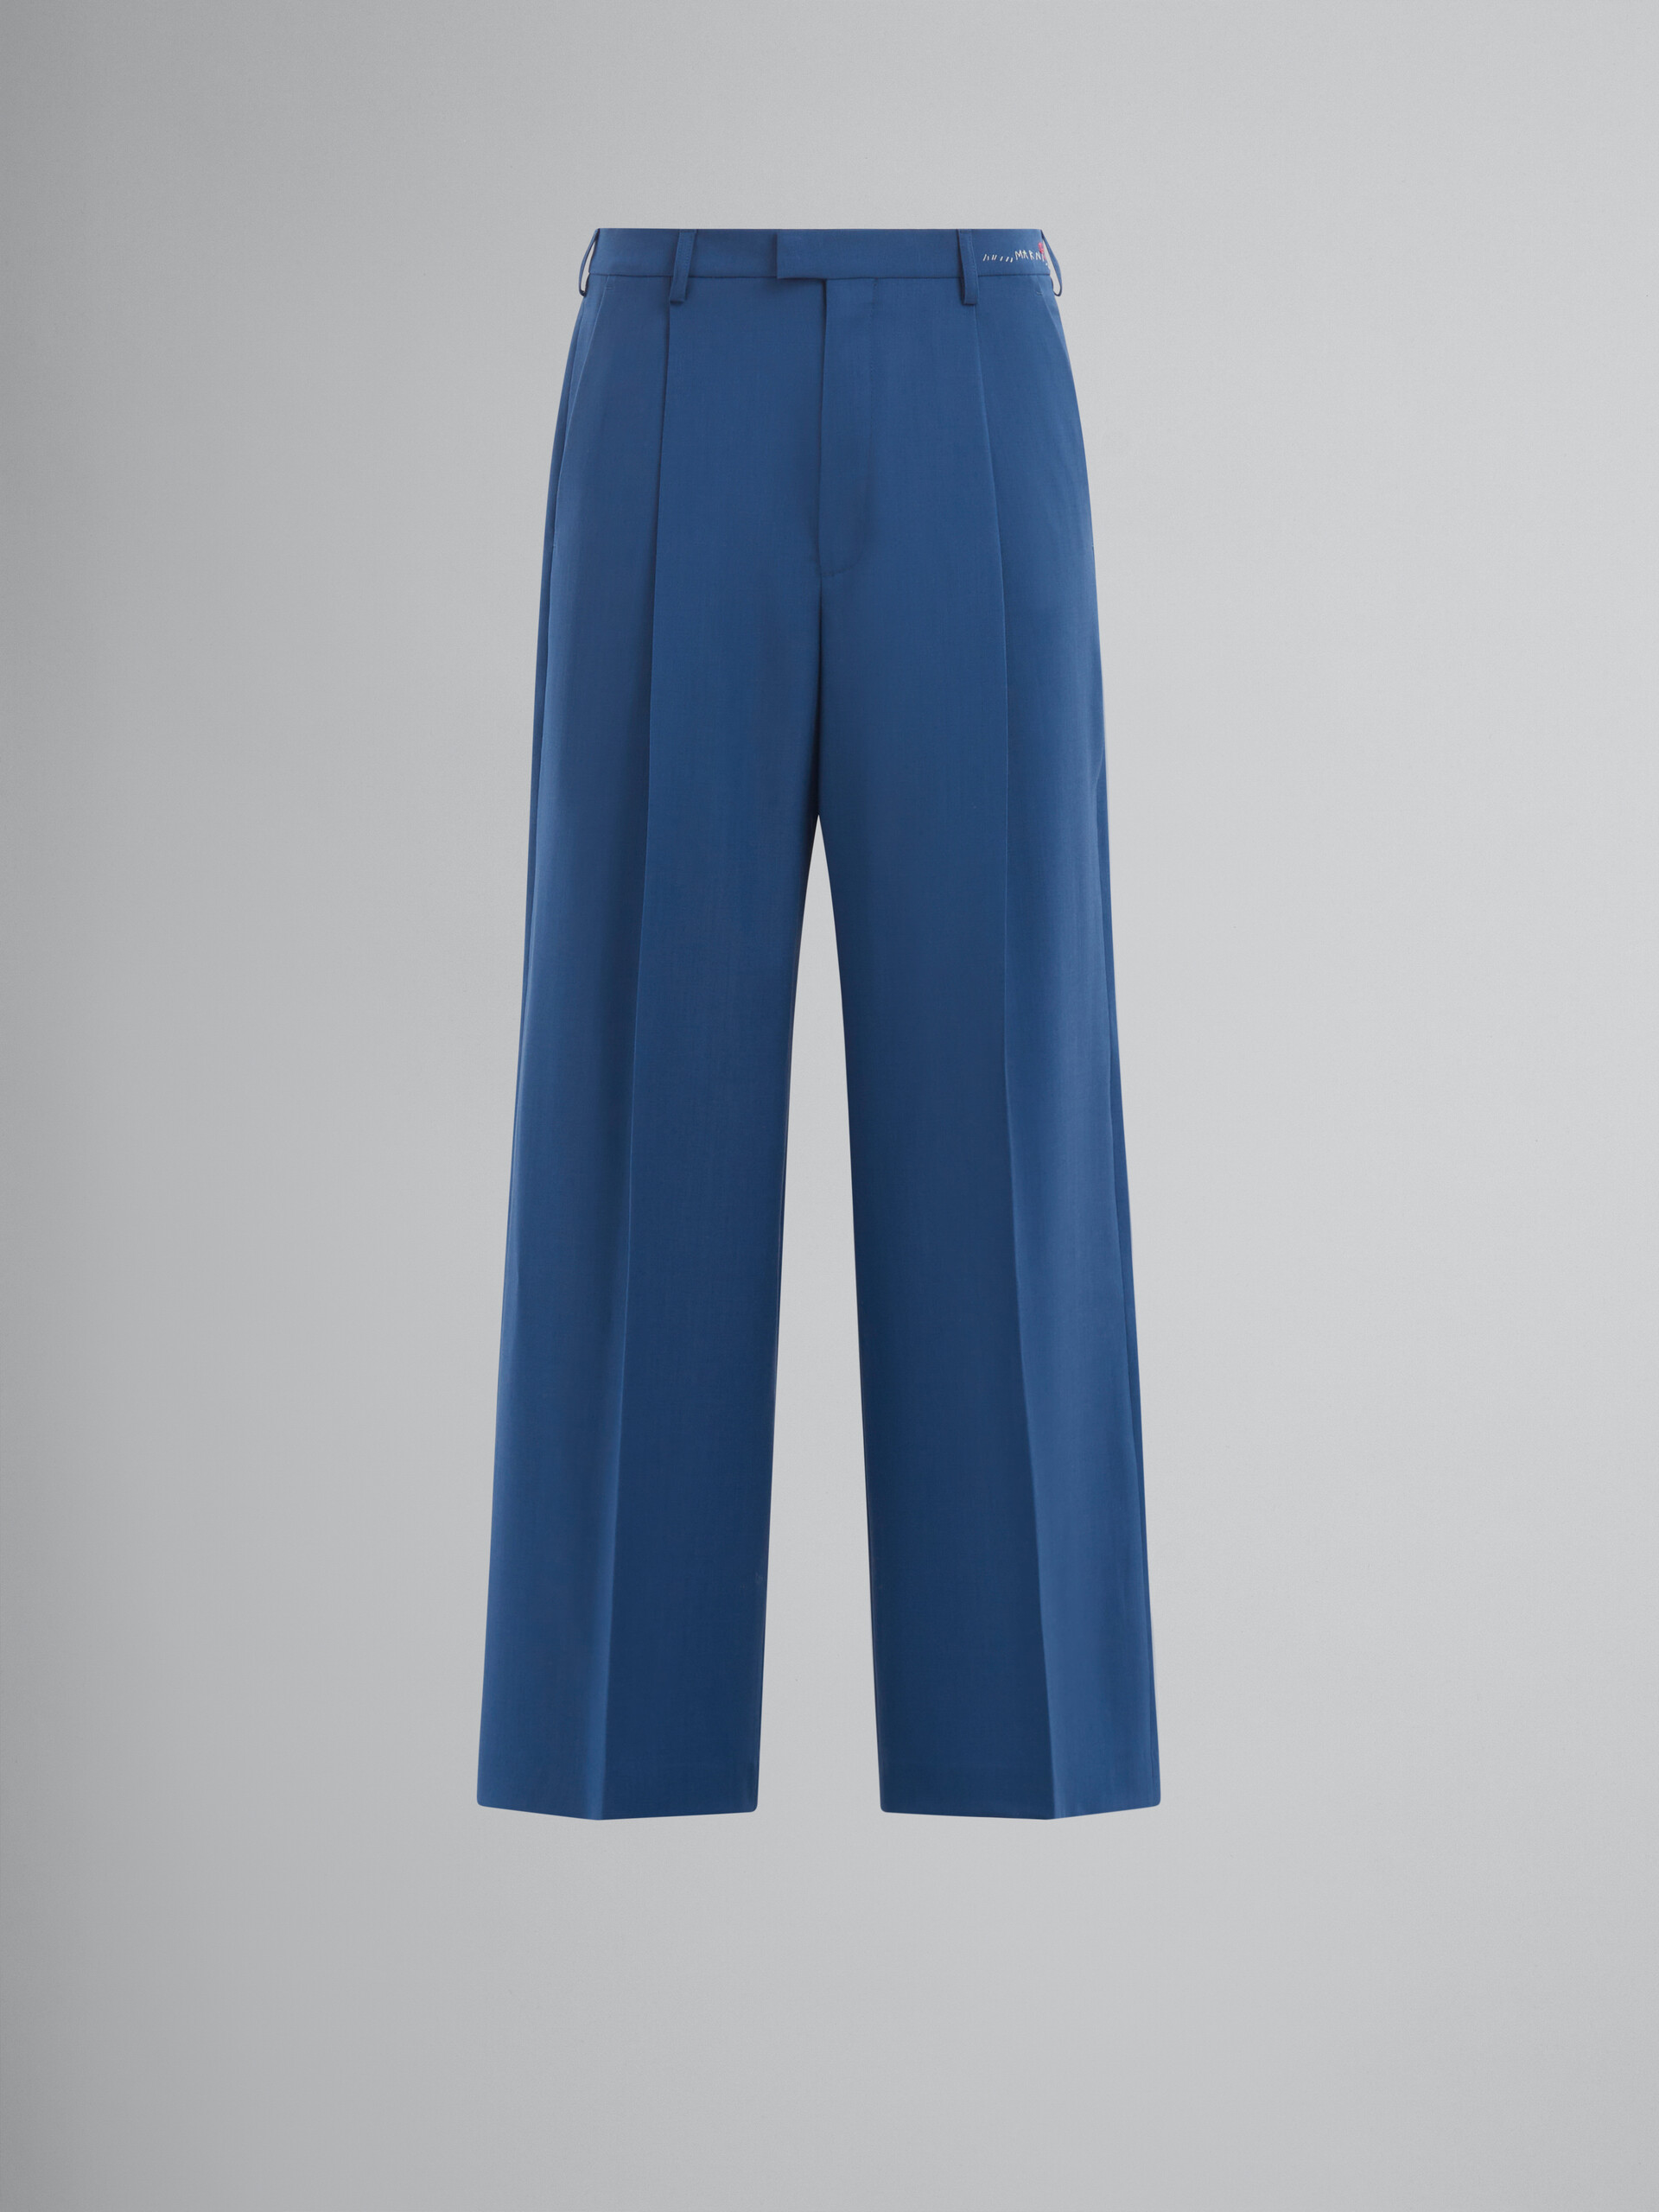 Blaue Hose aus Wolle und Mohair mit Falten - Hosen - Image 1